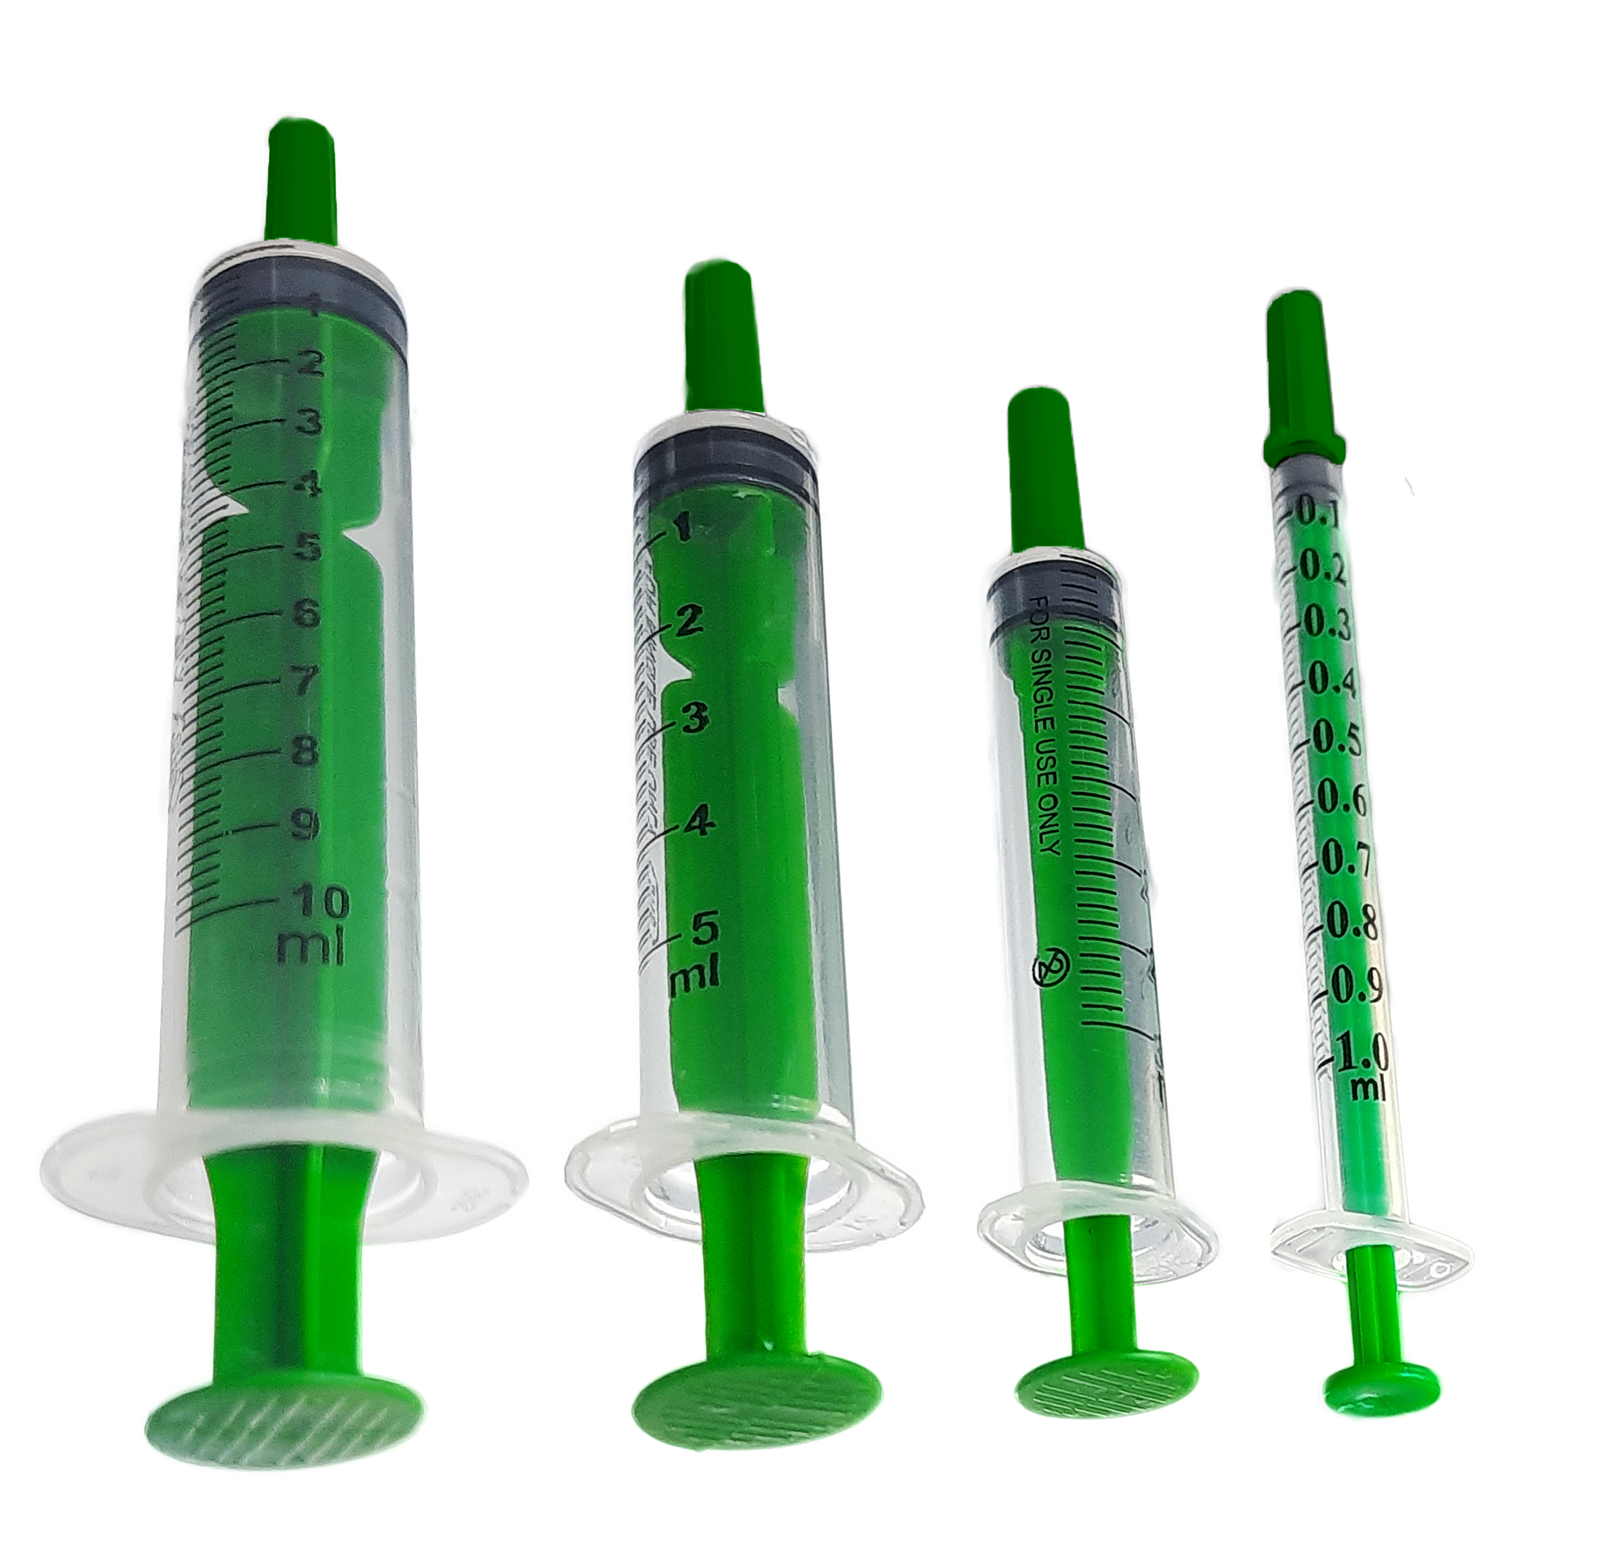 Oral Syringe Image